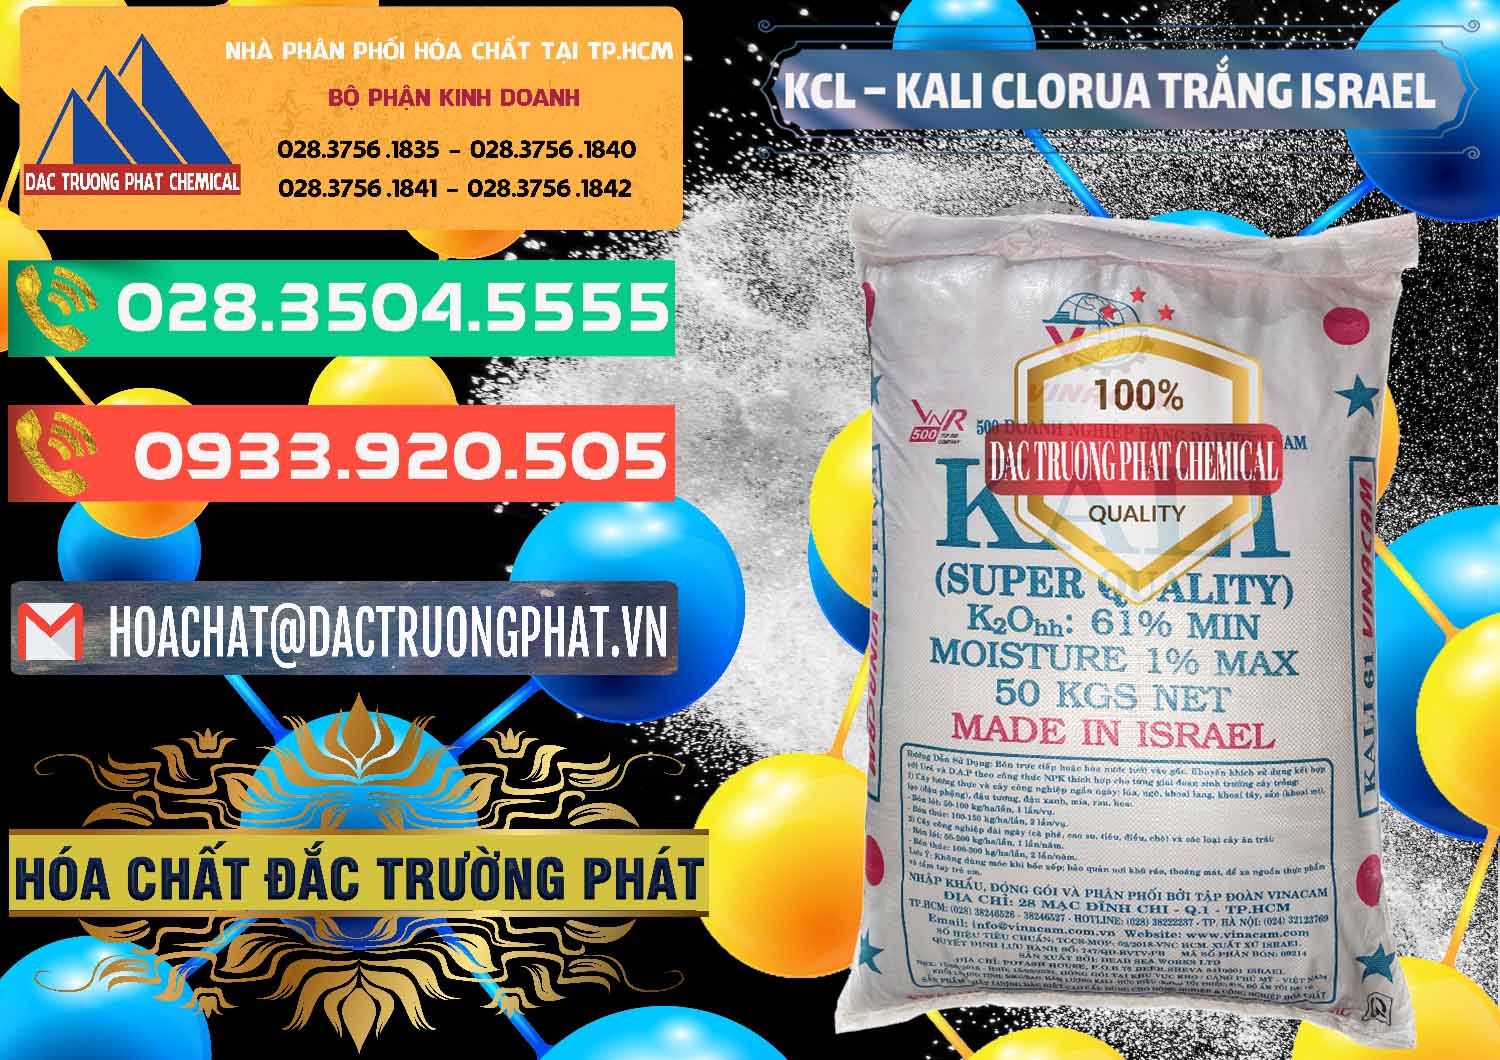 Công ty chuyên kinh doanh và bán KCL – Kali Clorua Trắng Israel - 0087 - Nhà phân phối - cung cấp hóa chất tại TP.HCM - congtyhoachat.com.vn